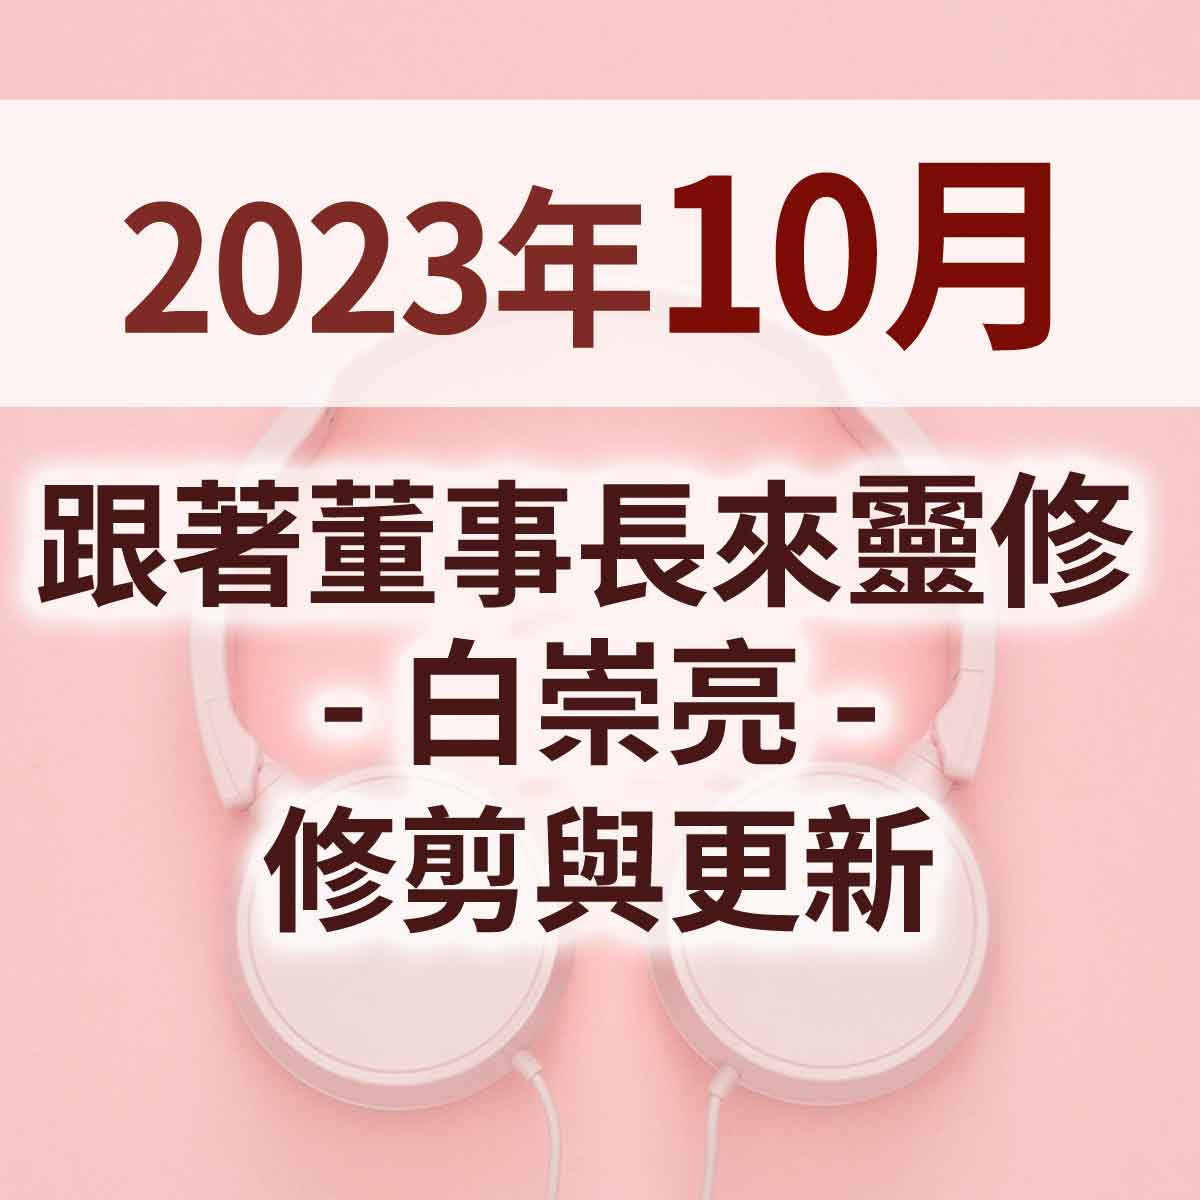 2023年10月 - 跟著董事長來靈修 - 白崇亮 - 修剪與更新封面圖